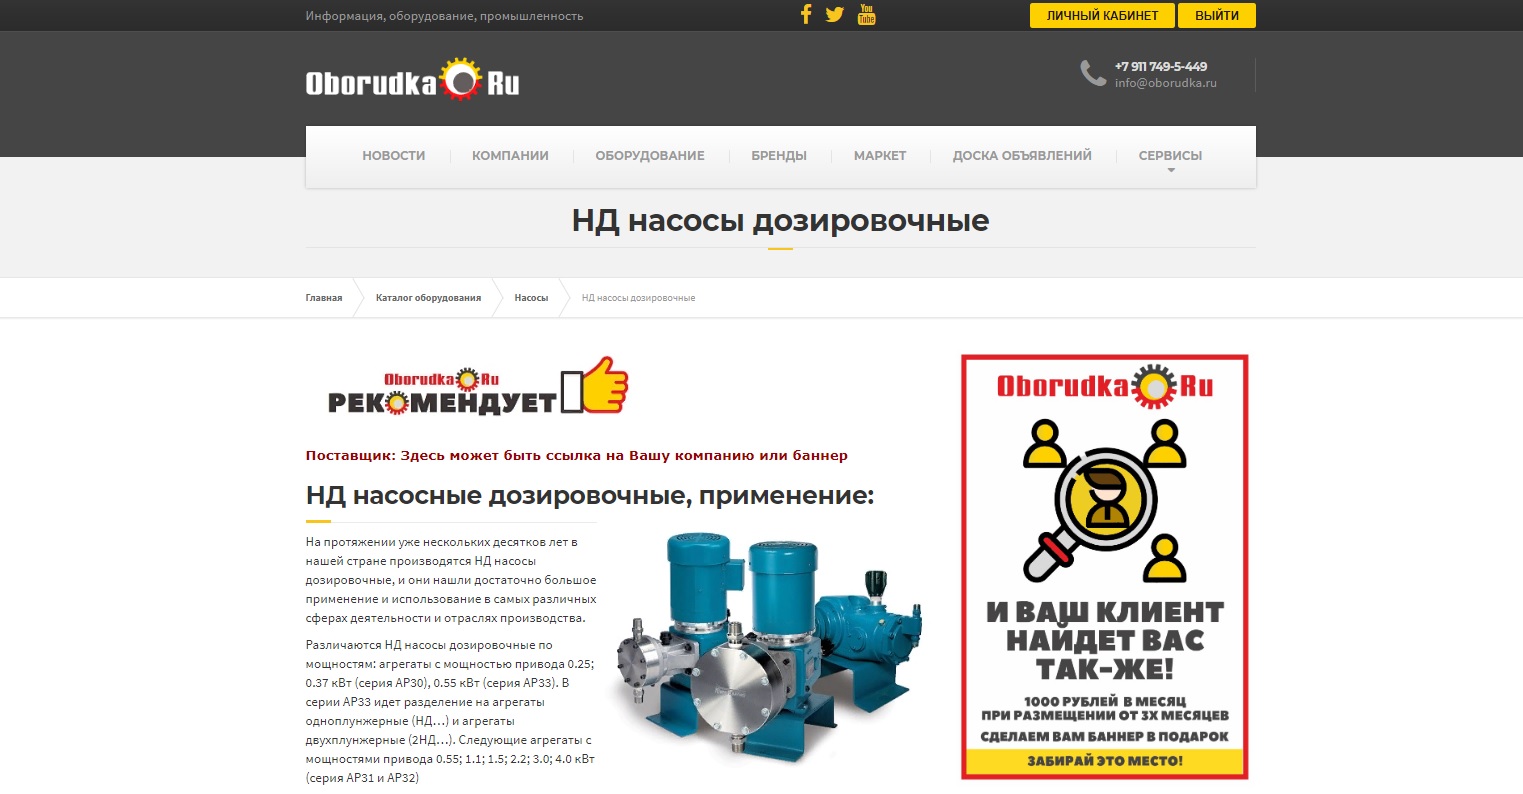 пример размещения в каталоге оборудования портала oborudka.ru